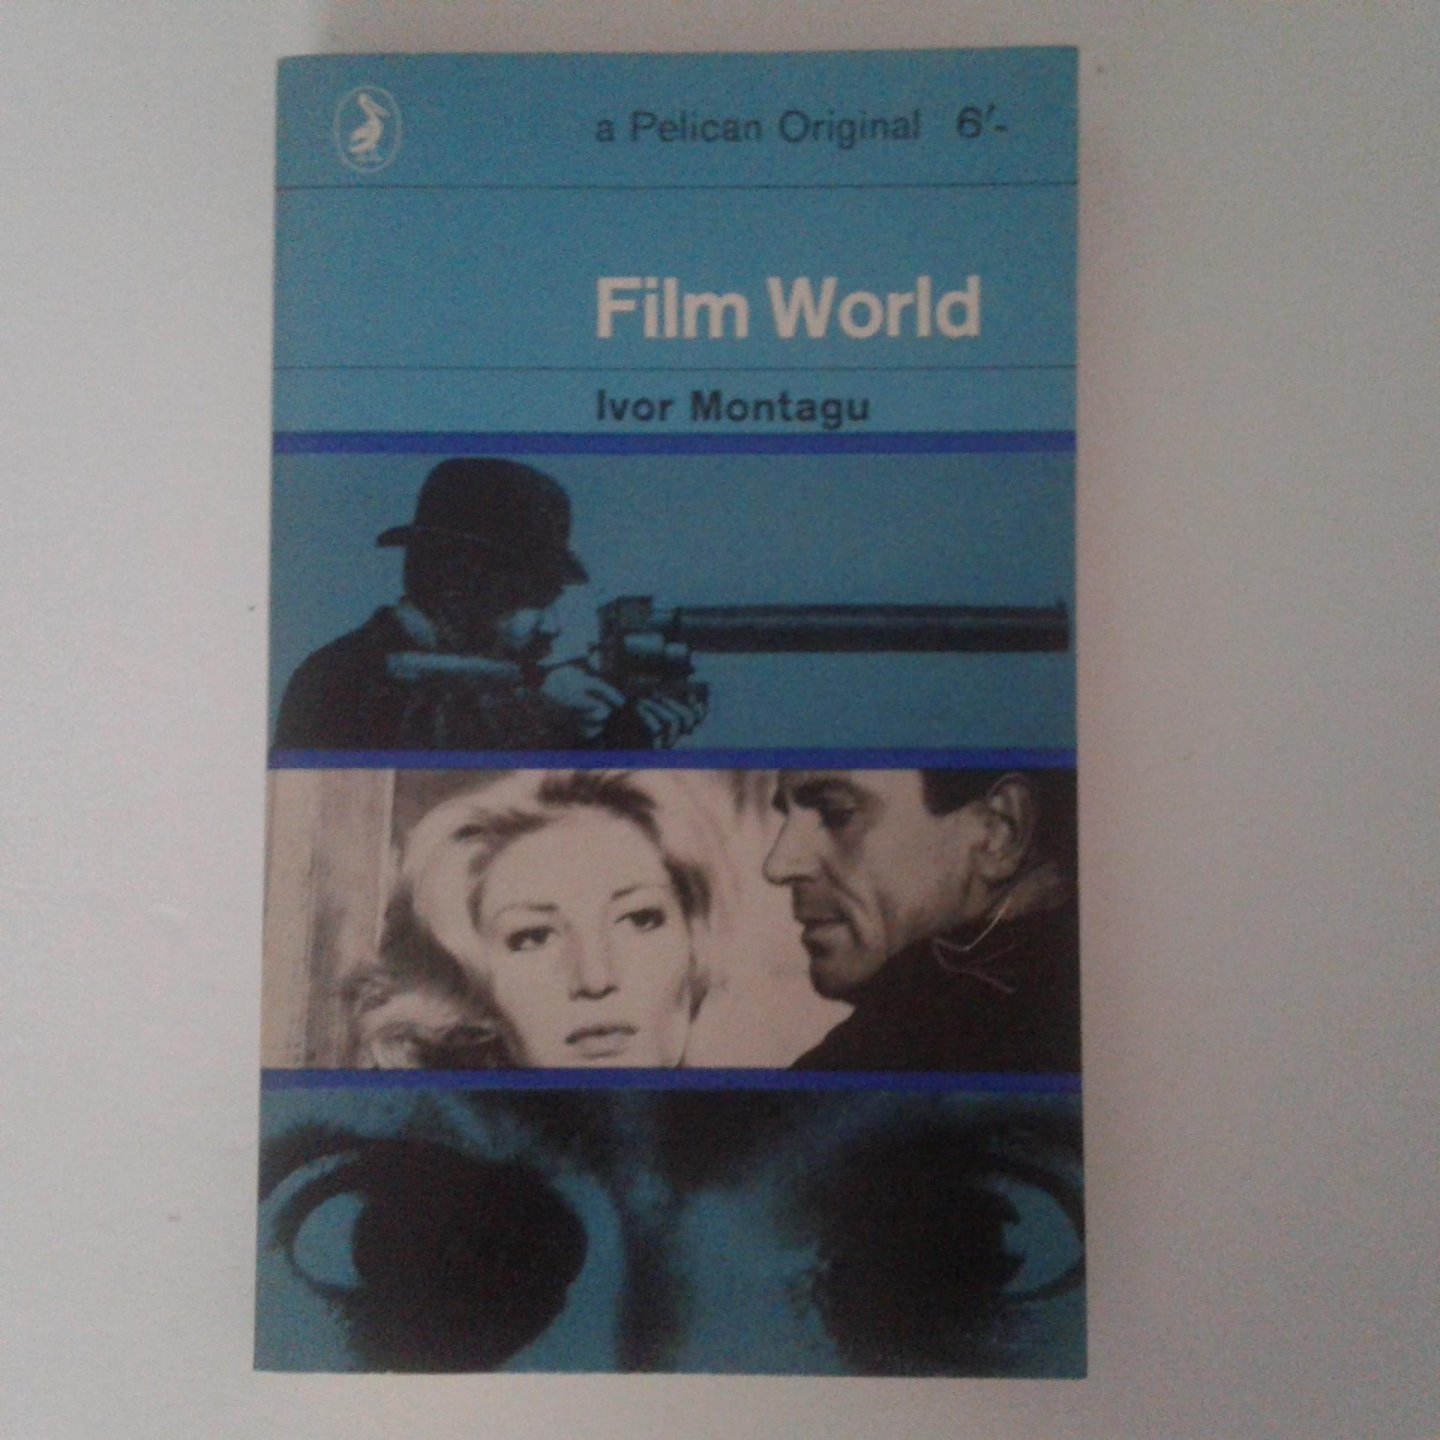 Montagu, Ivor - Film World ; A Guide to Cinema